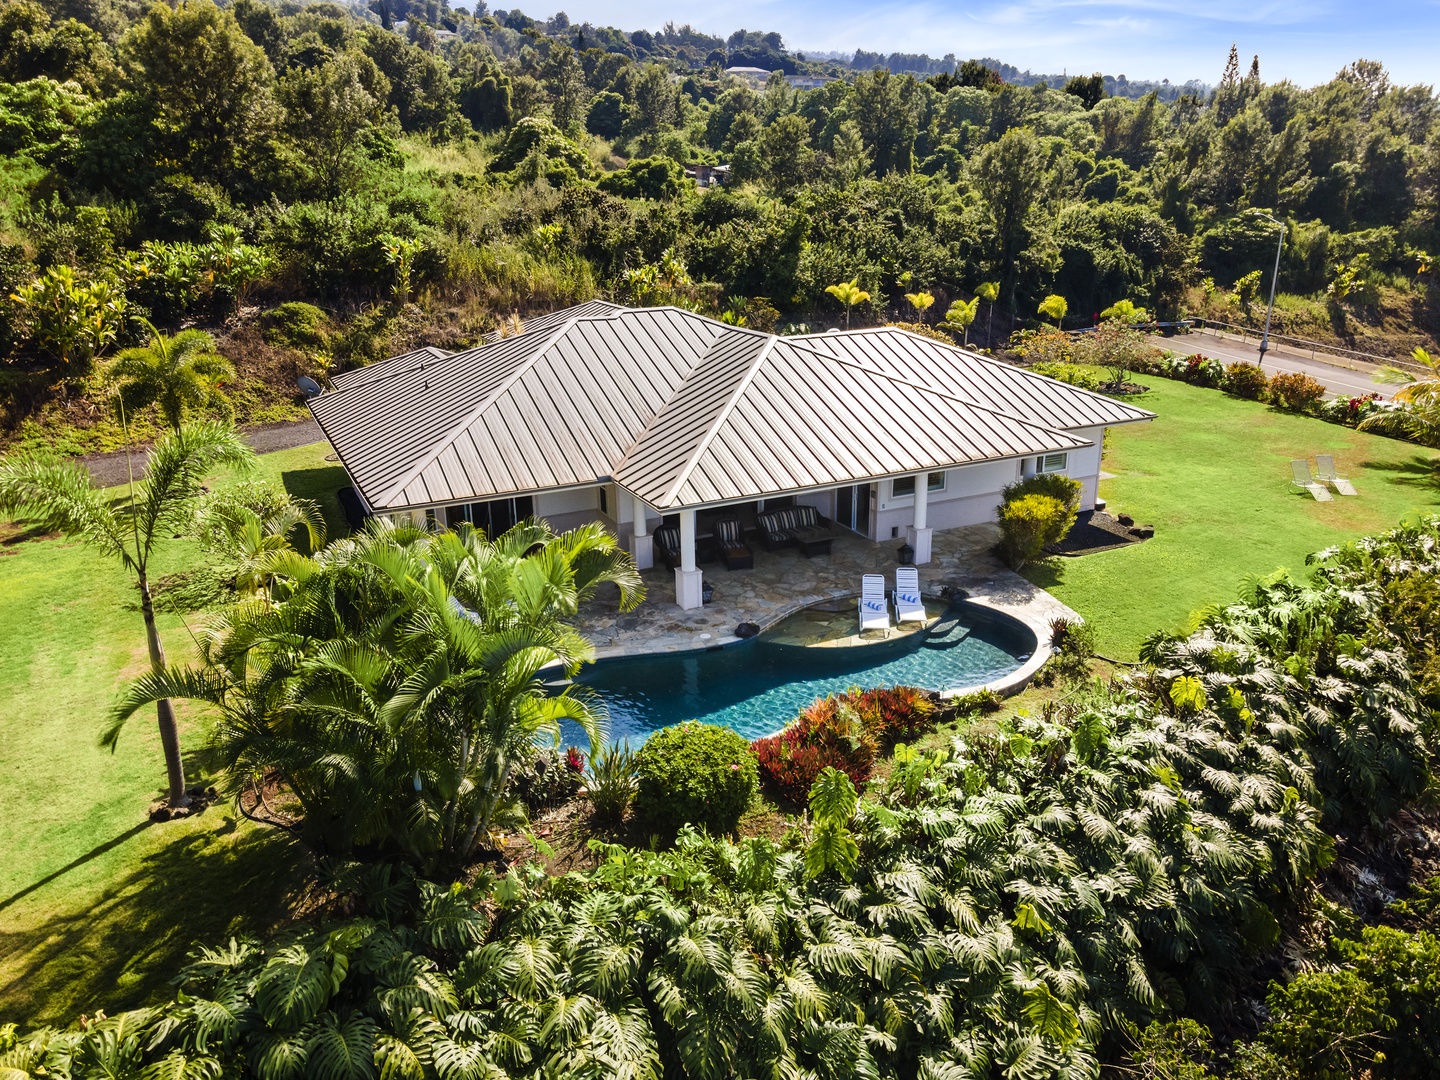 Kailua Kona Vacation Rentals, Piko Nani - Aerial view of the home and pool!